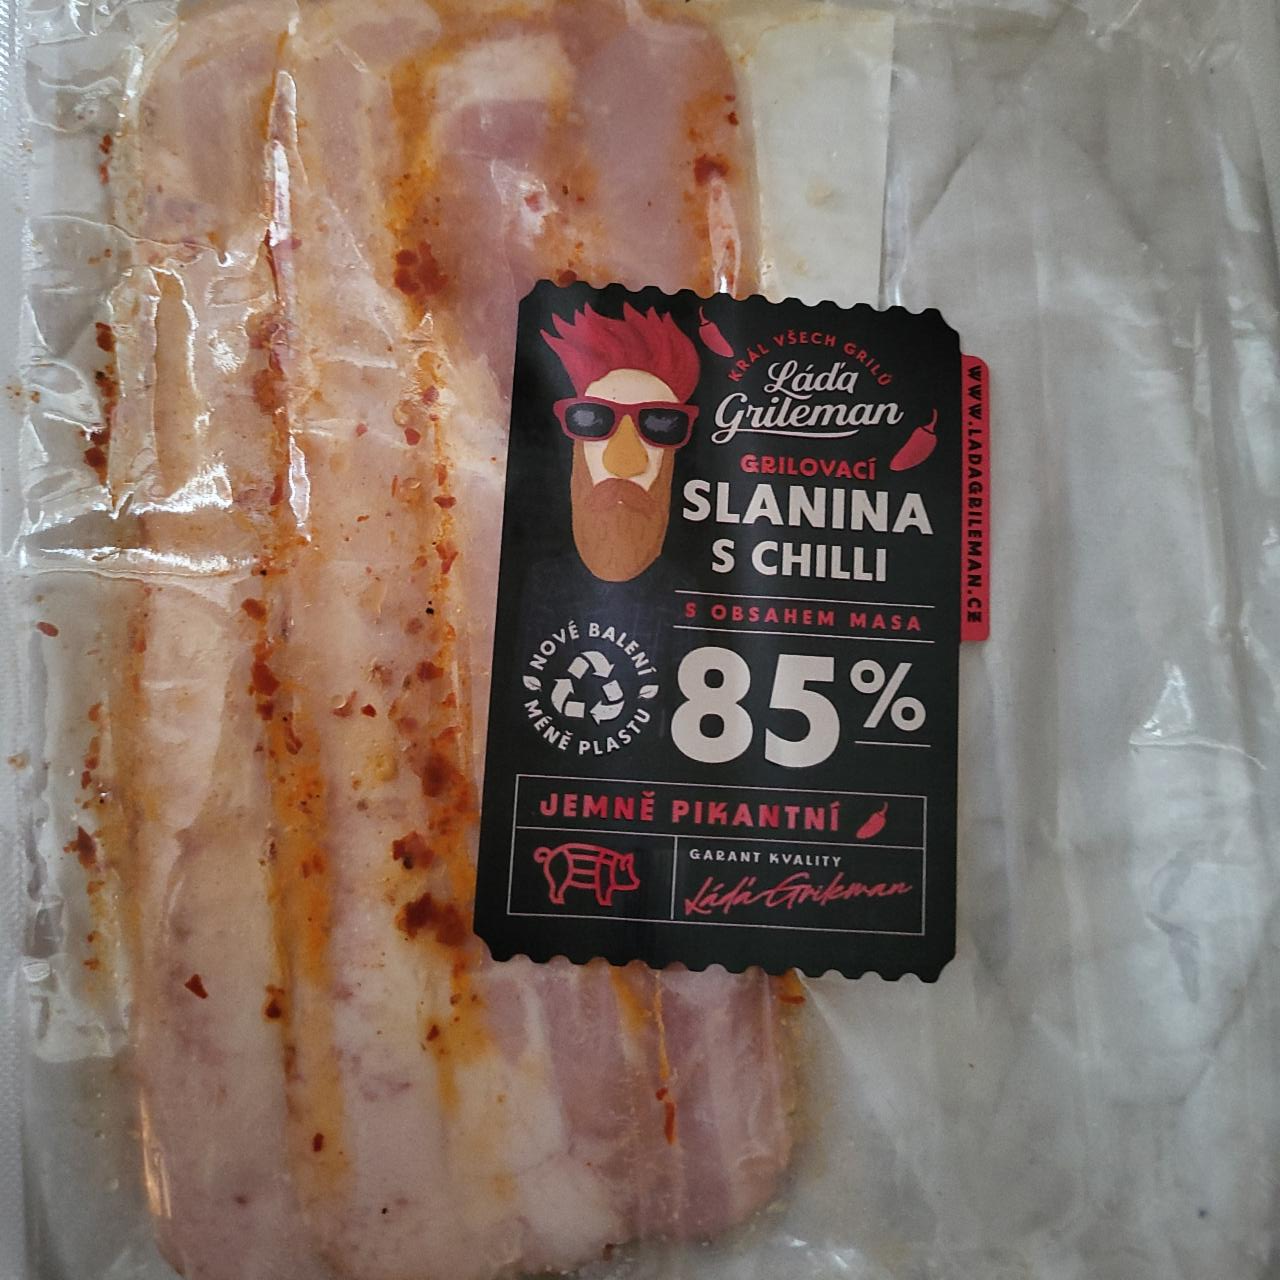 Fotografie - Grilovací slanina s chilli s obsahem masa 85% Láďa Grileman